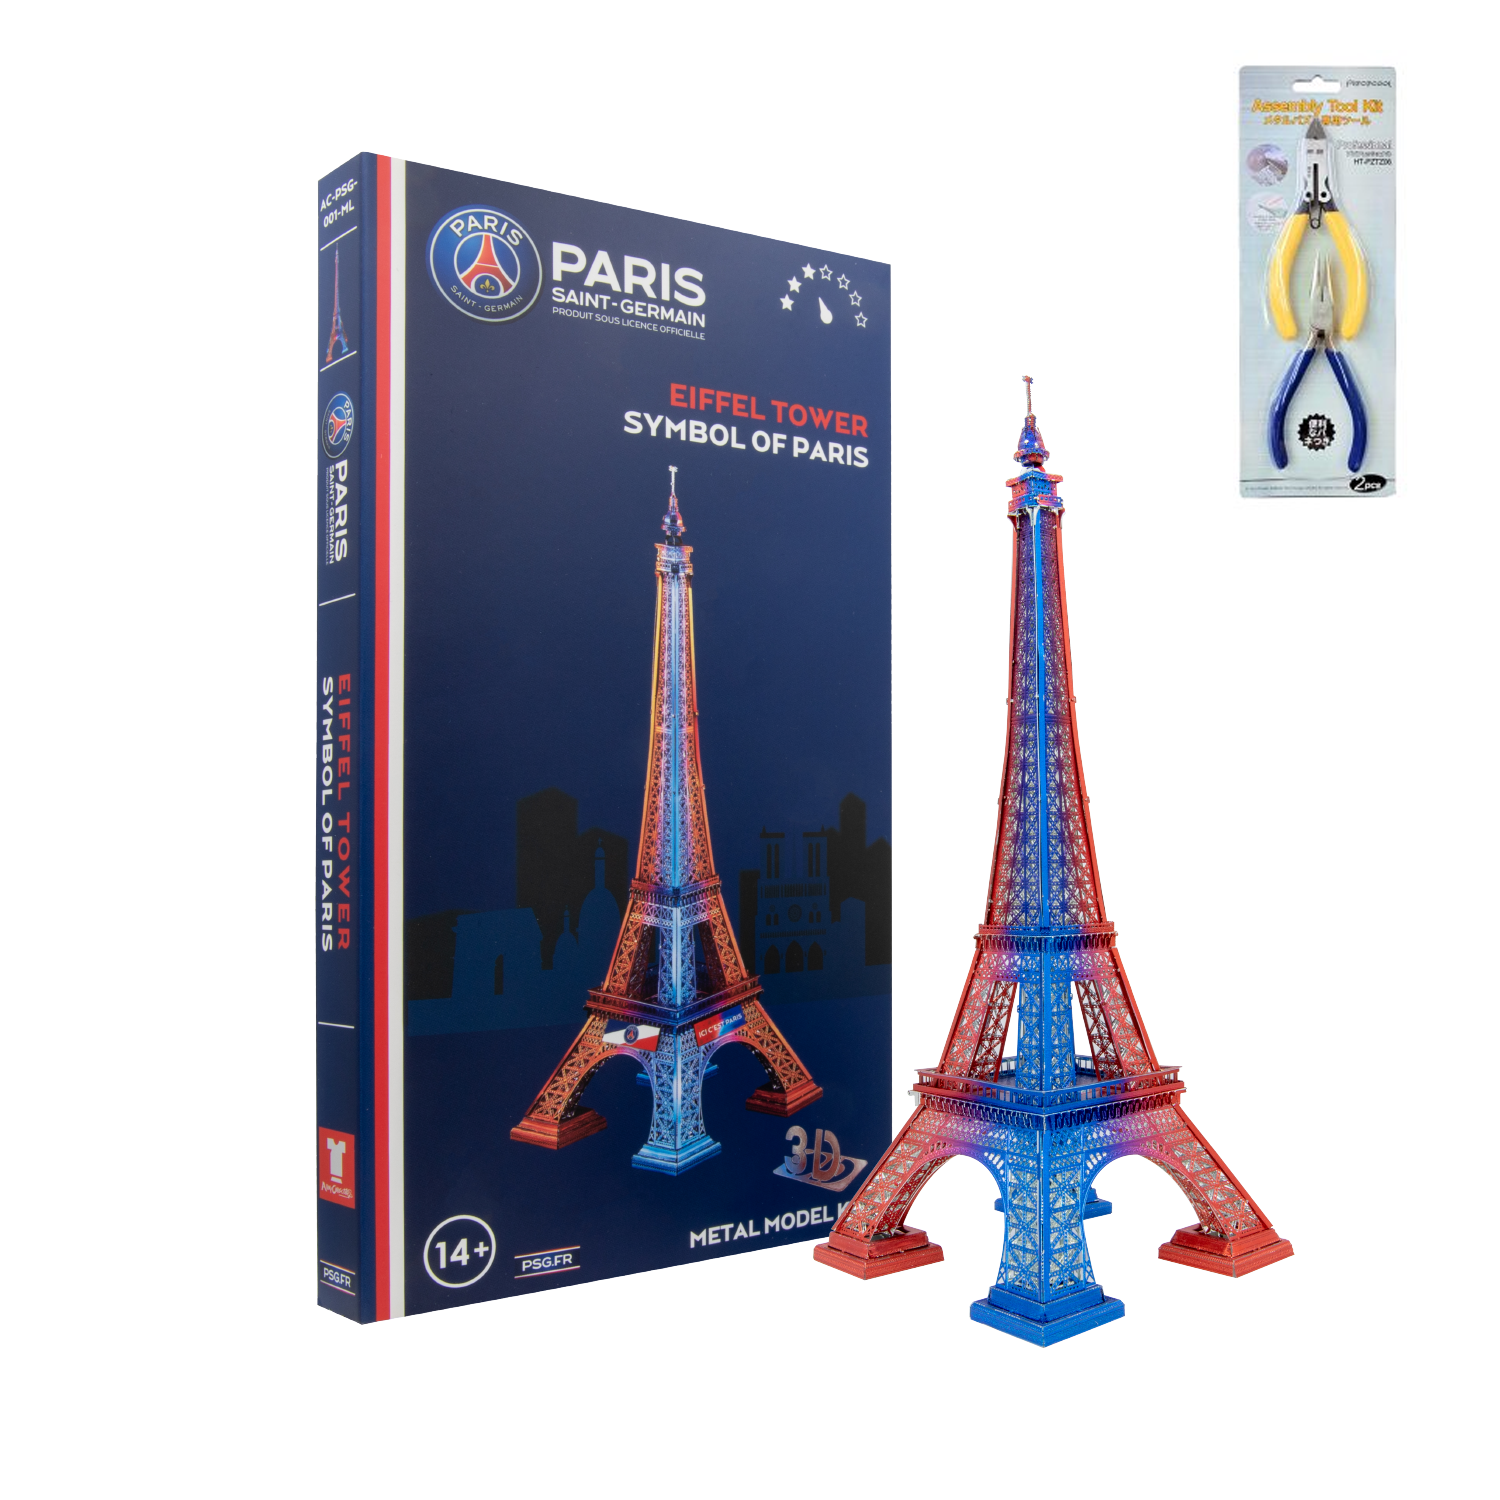 PSG Tour Eiffel Officielle - Boutique Saint Germain